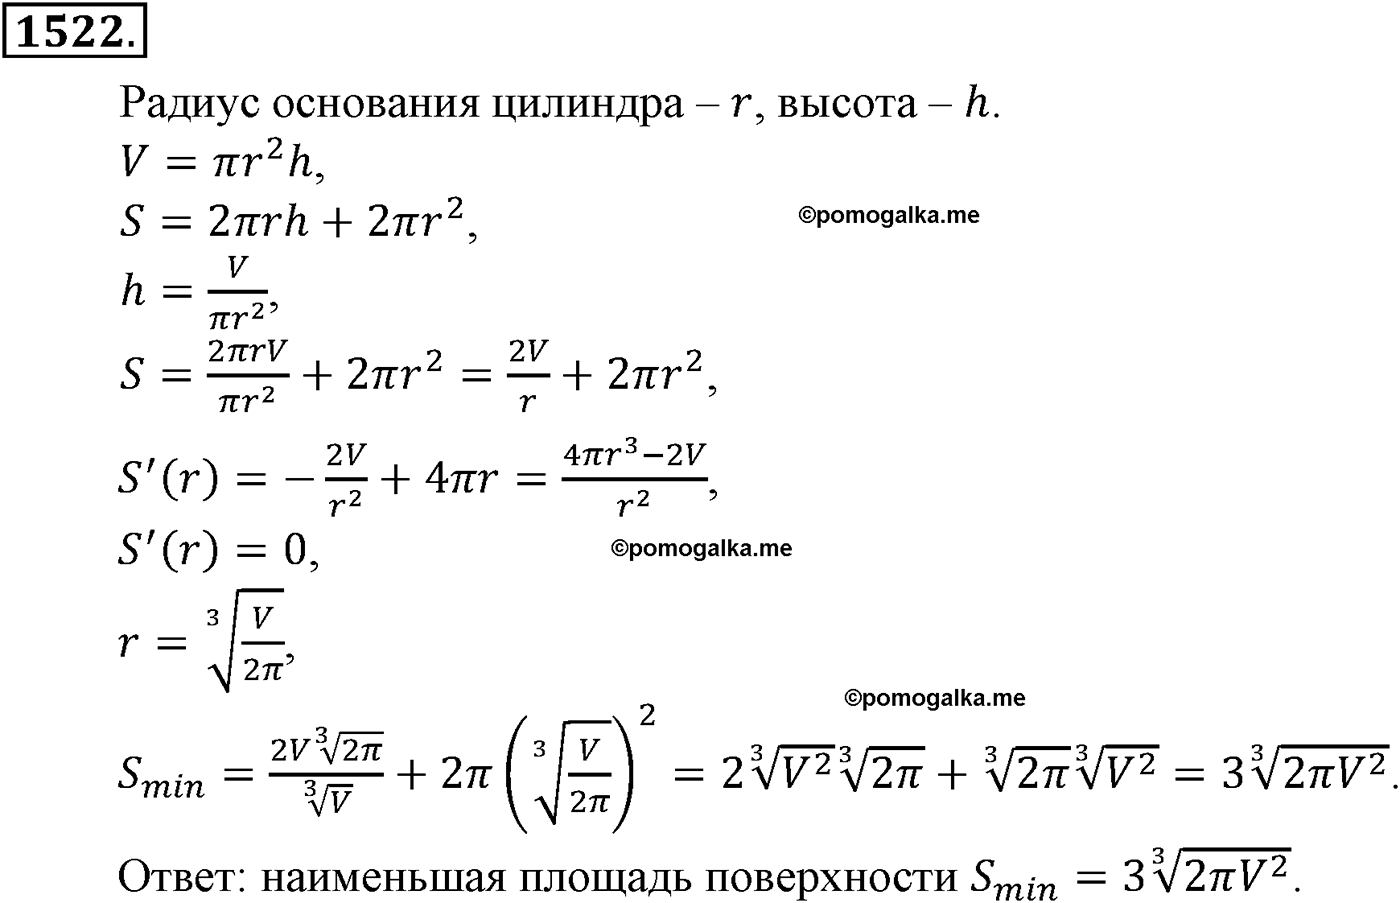 разбор задачи №1522 по алгебре за 10-11 класс из учебника Алимова, Колягина